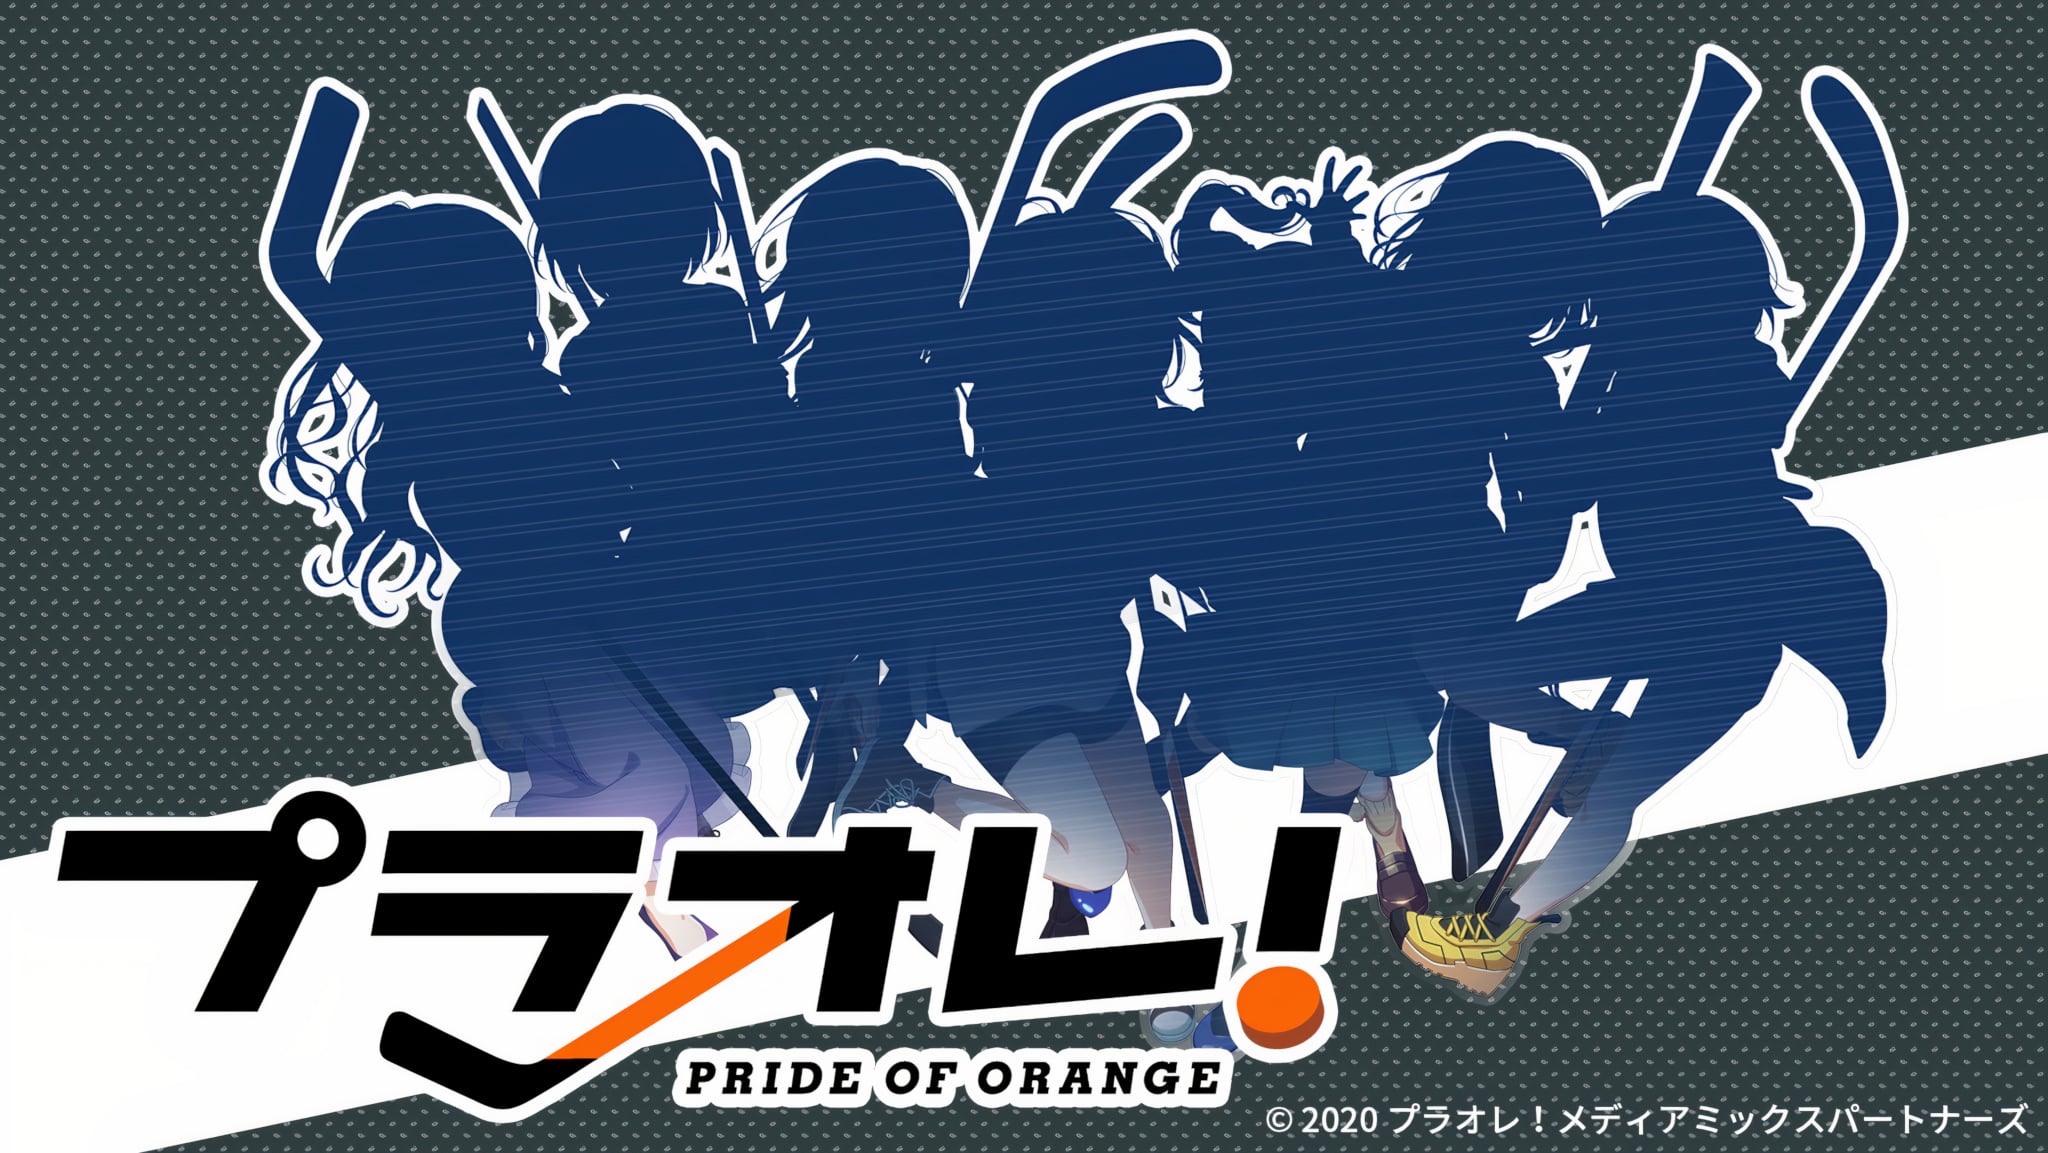 Pride of Orange er den første pige ishockey anime